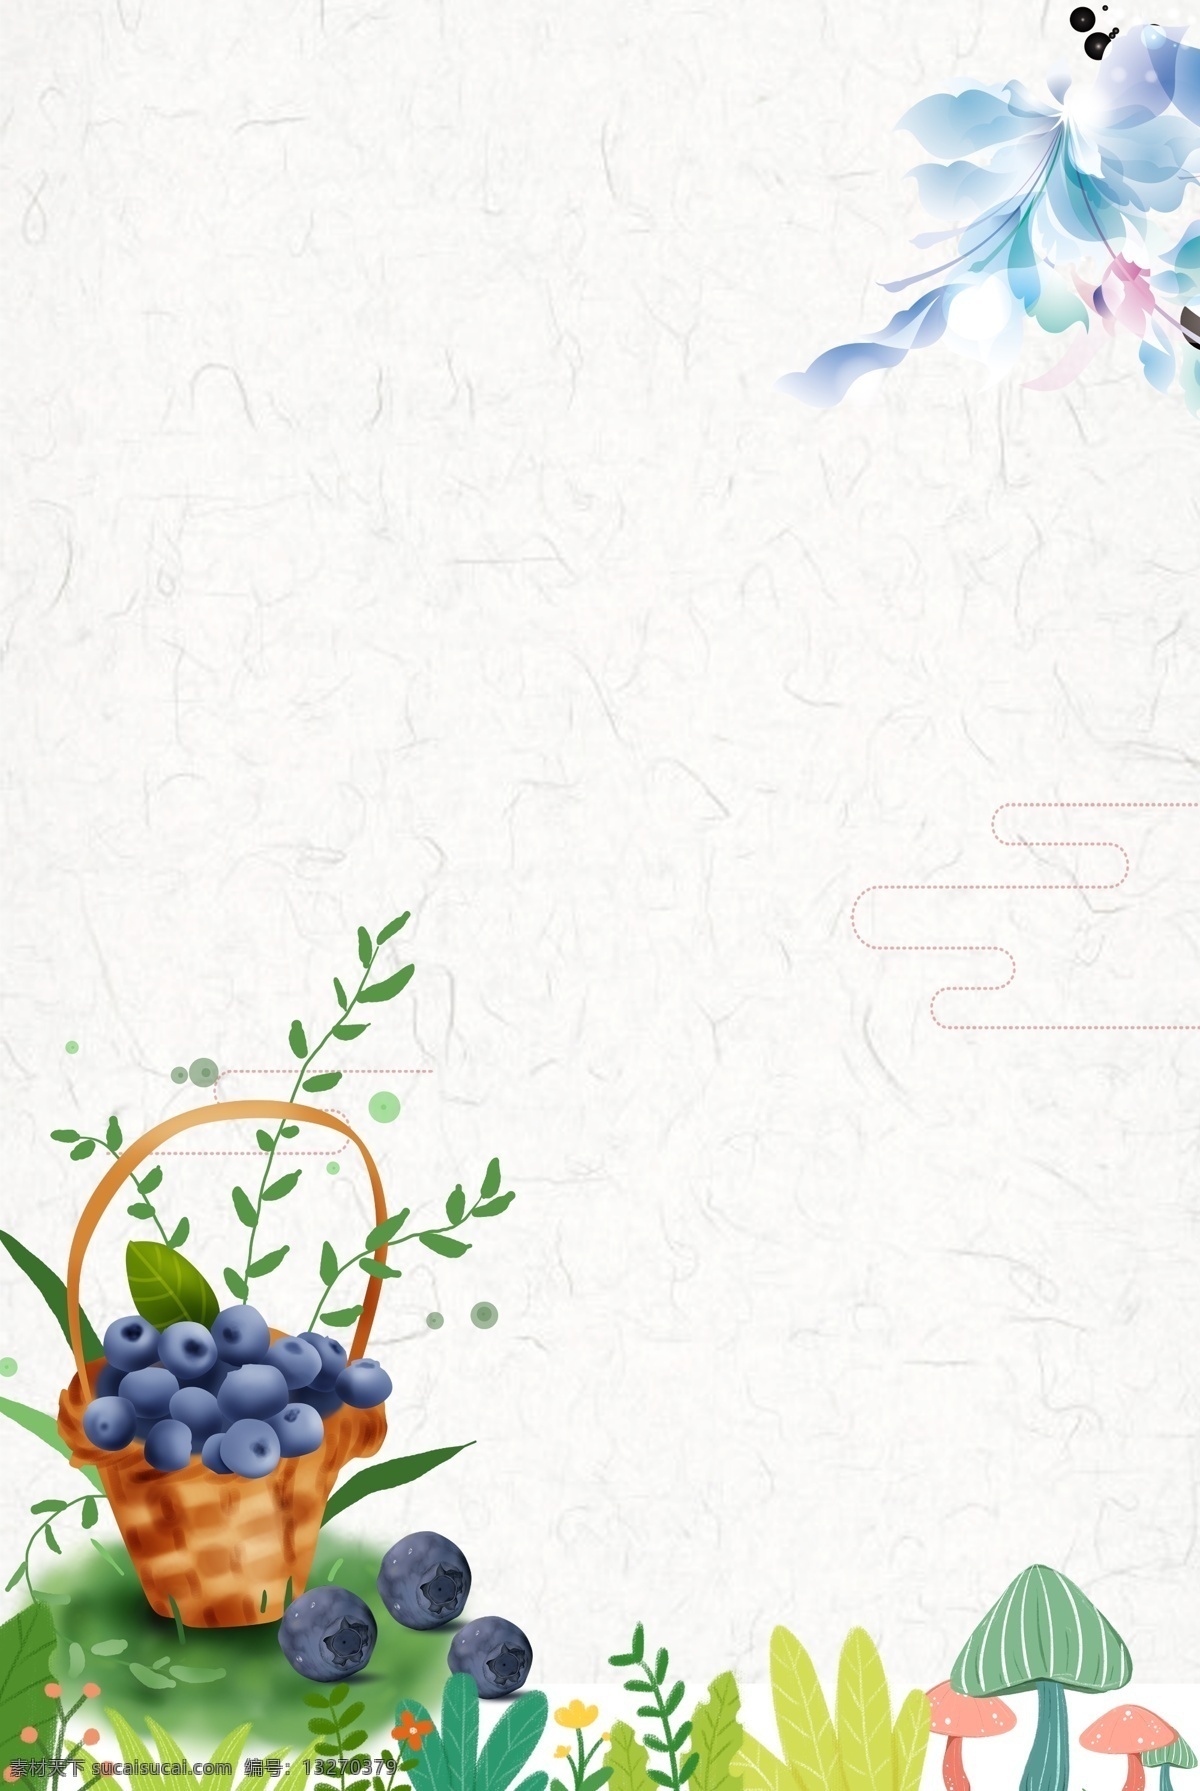 水果花卉背景 简约 清新 纹理 淡雅 水果 蓝莓 卡通 花卉